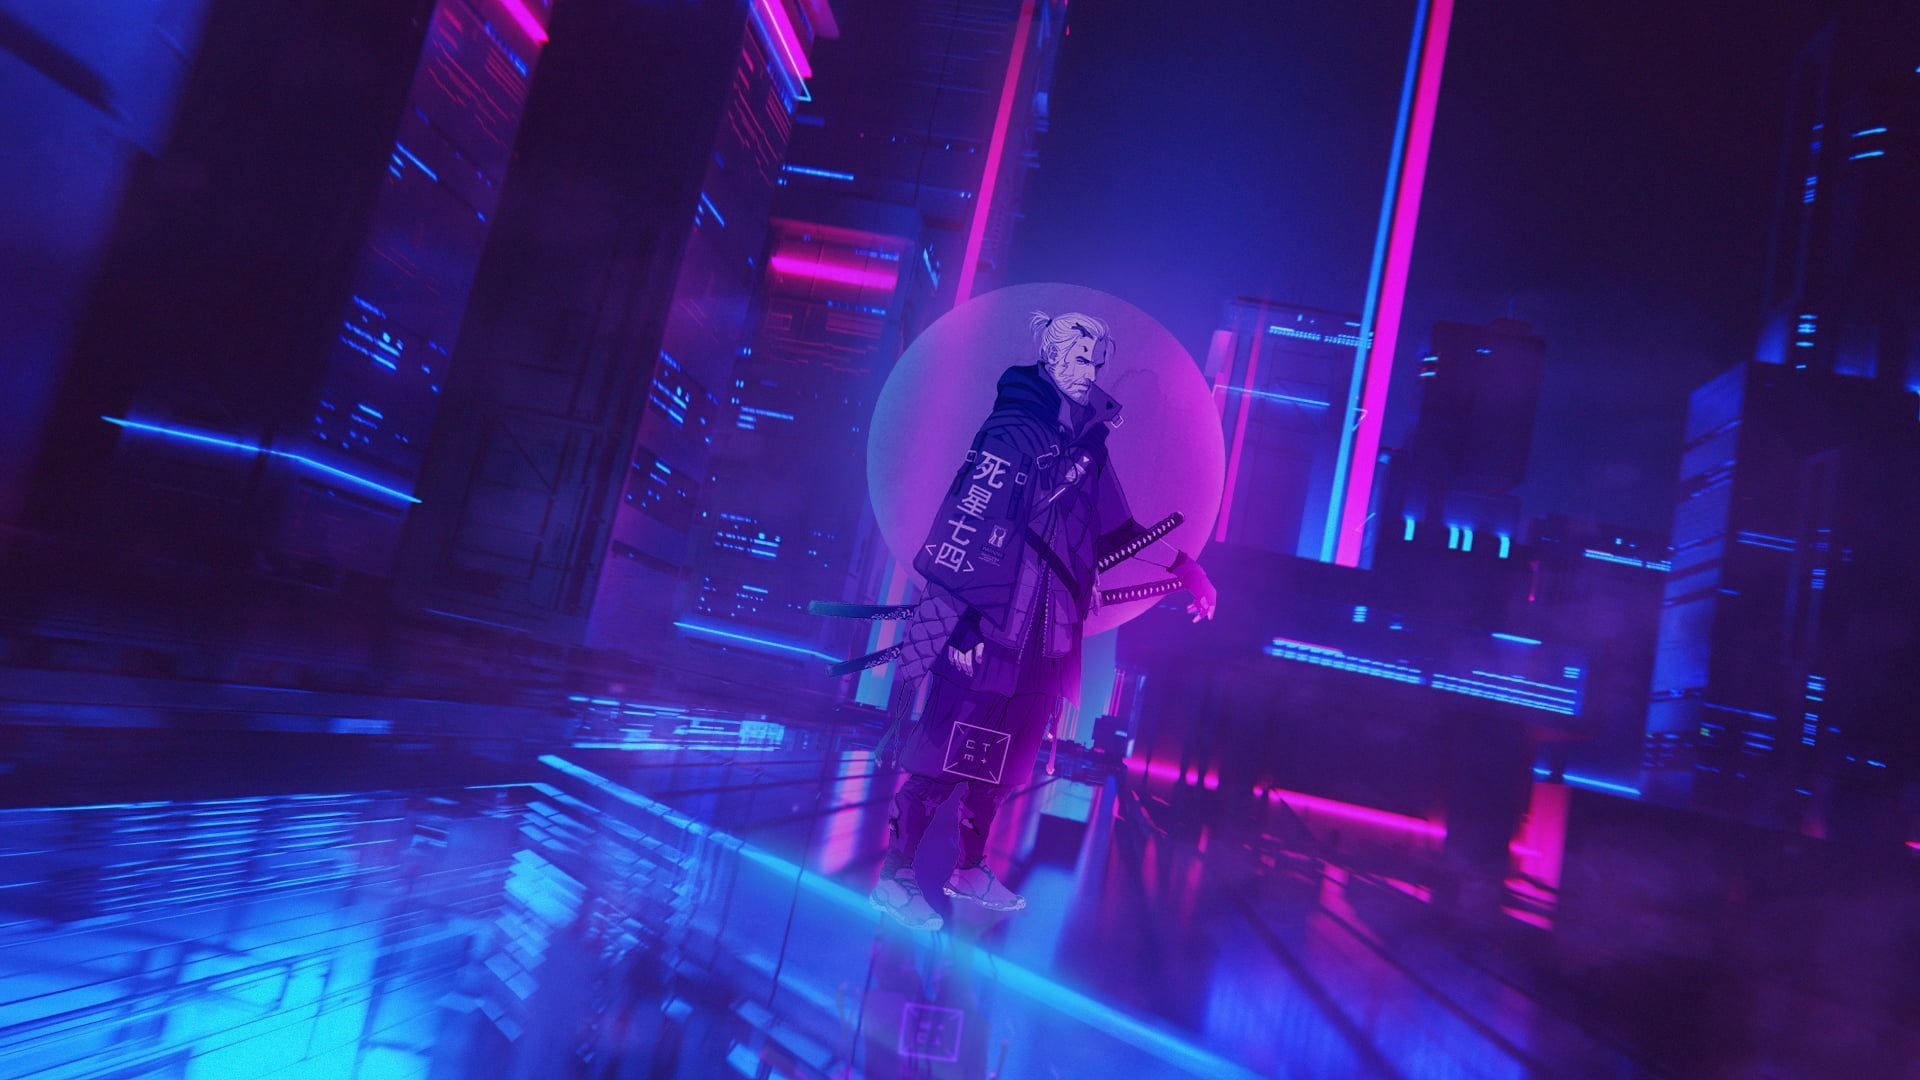 cyberpunk Cyberpunk 2077 cyber city #neon The Witcher Geralt of Rivia P #wallpaper #hdwallpaper #desktop. The witcher, Cyberpunk Cyberpunk